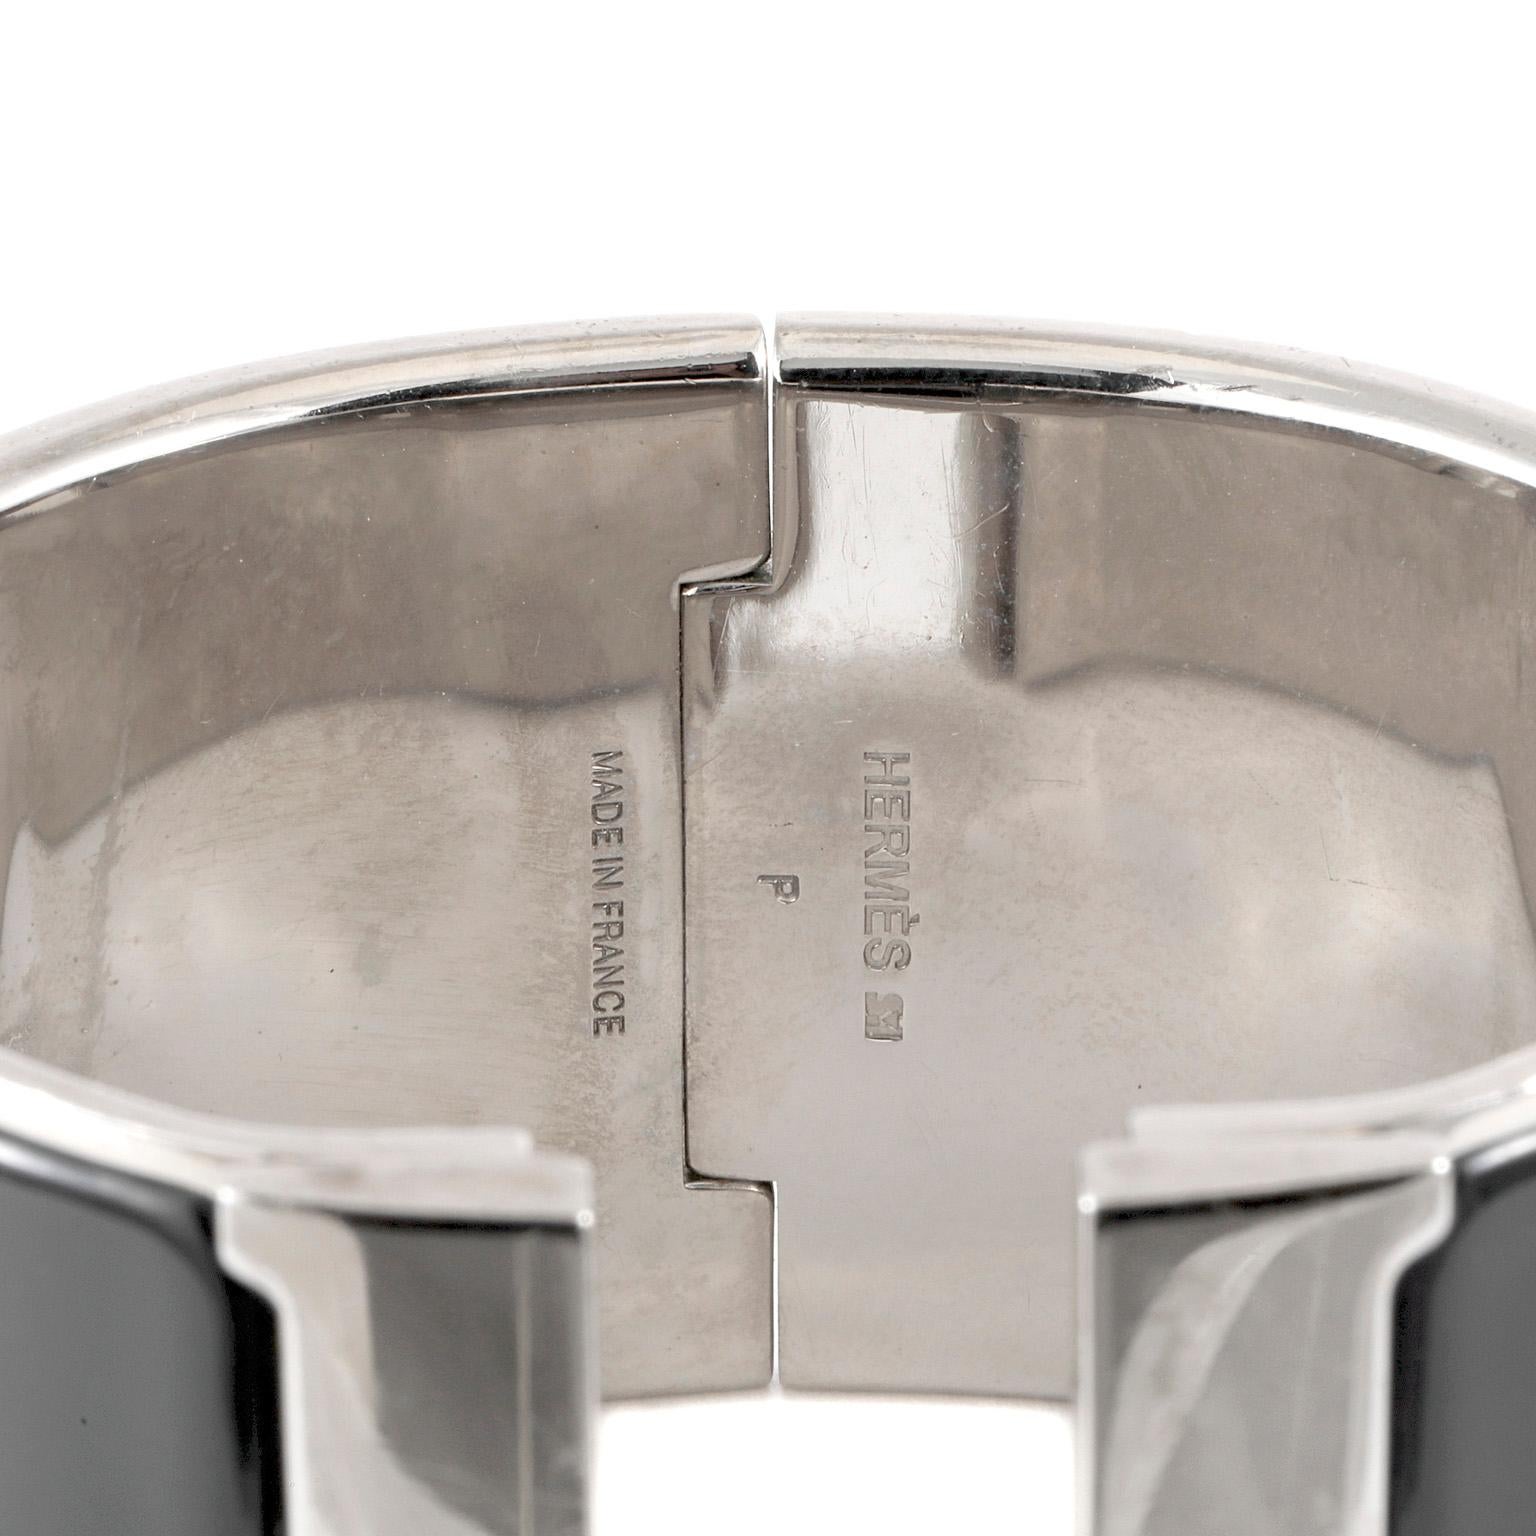 Cet authentique bracelet Clic Clac Cuff en émail noir extra large d'Hermès est en bon état.  Quincaillerie en palladium, charnière pivotante en H noir.  Fabriqué en France.  Pochette ou boîte incluse.

PBF 13317